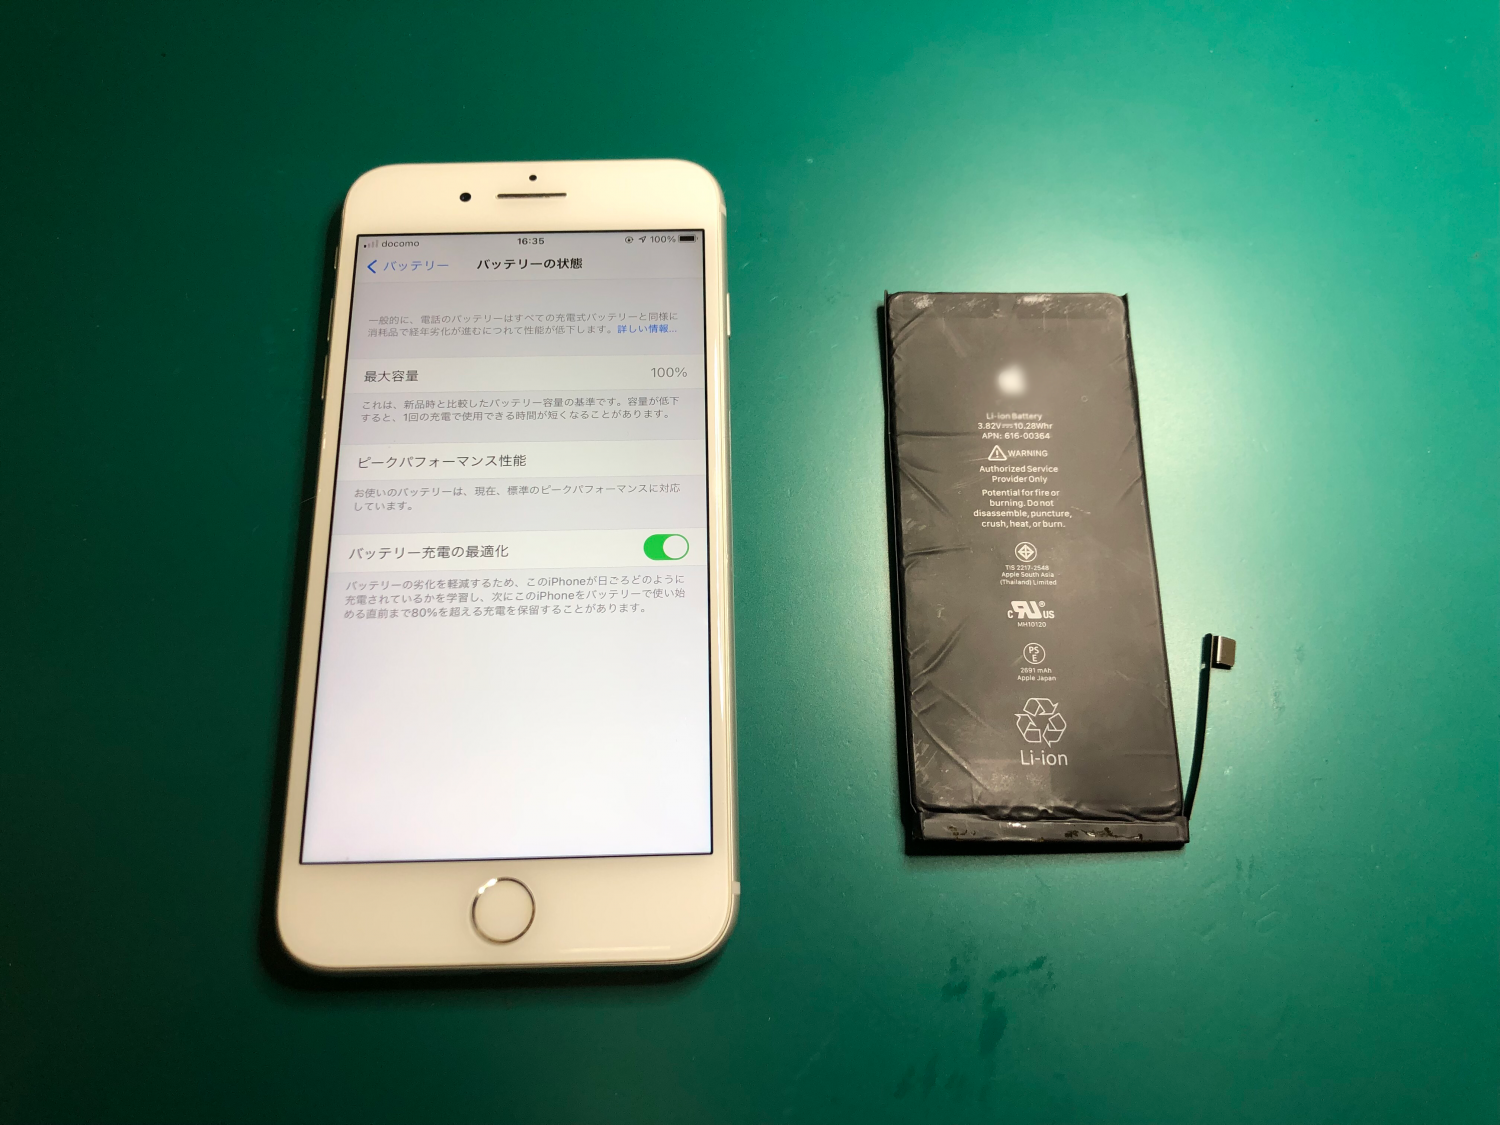 バッテリー劣化のメッセージが出ているiPhone修理。iPhoneバッテリー交換作業時間40分〜お気軽にご相談ください。